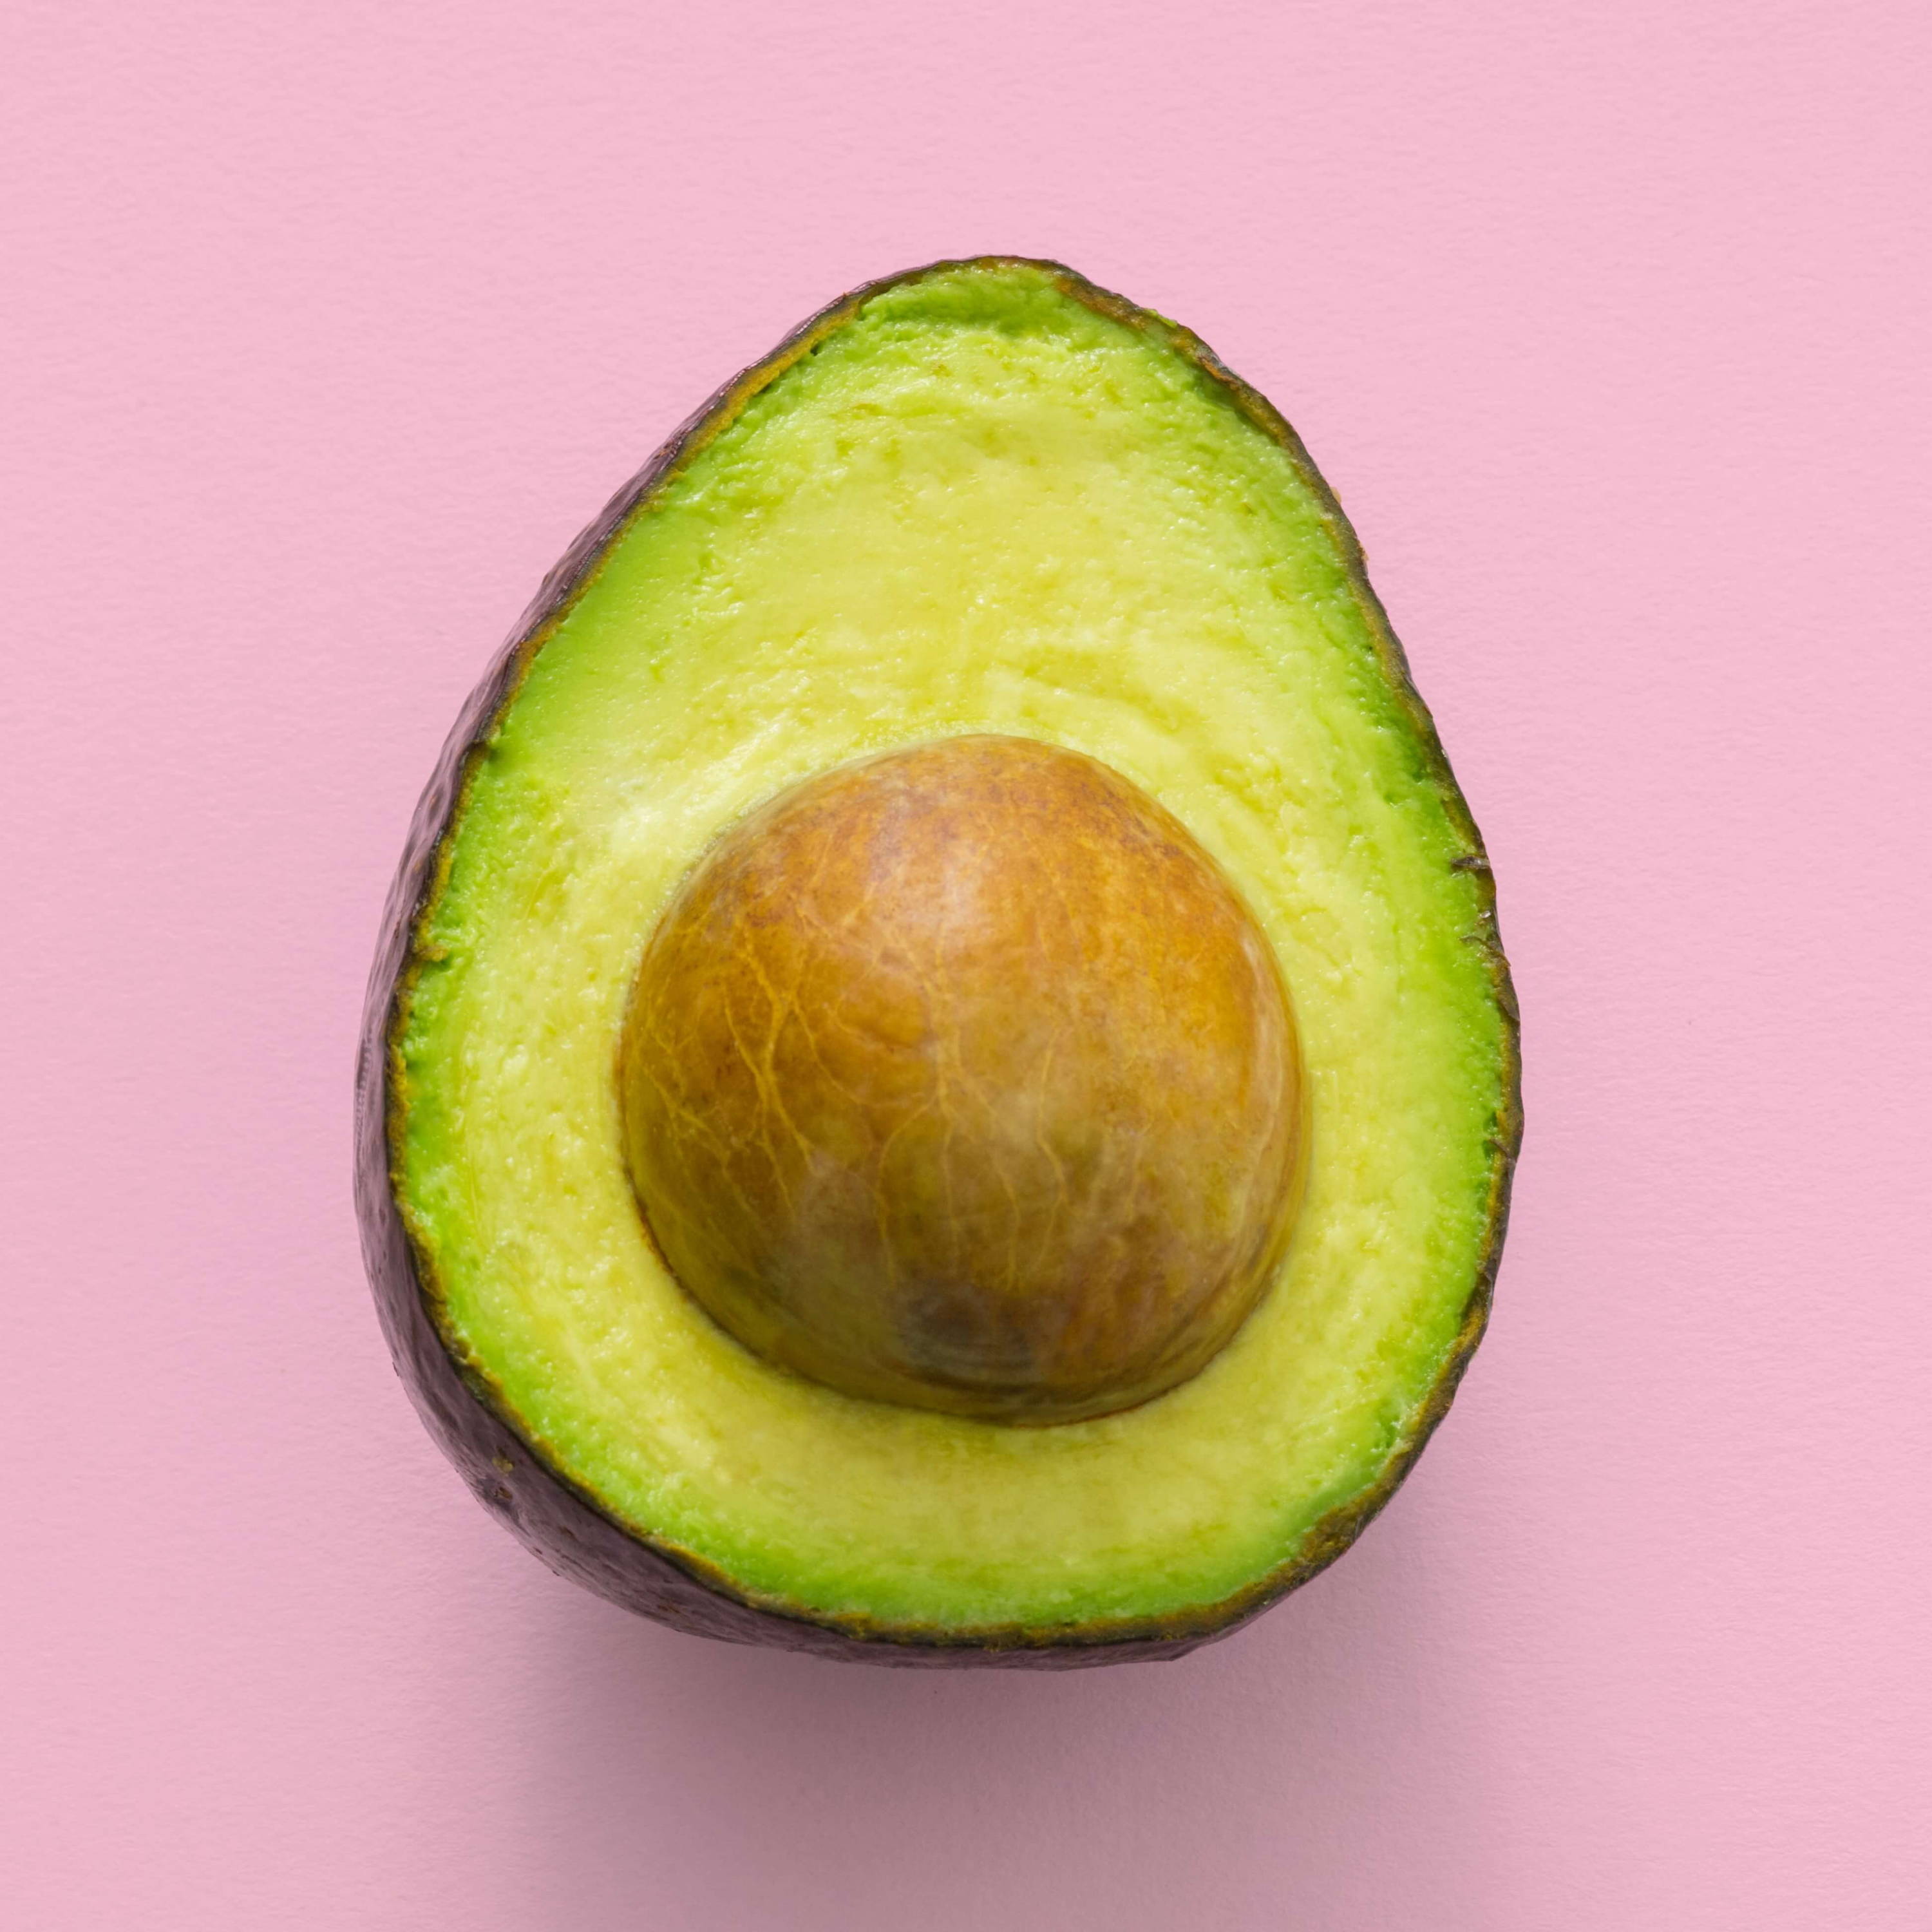 A halved avocado on a light pink background. 